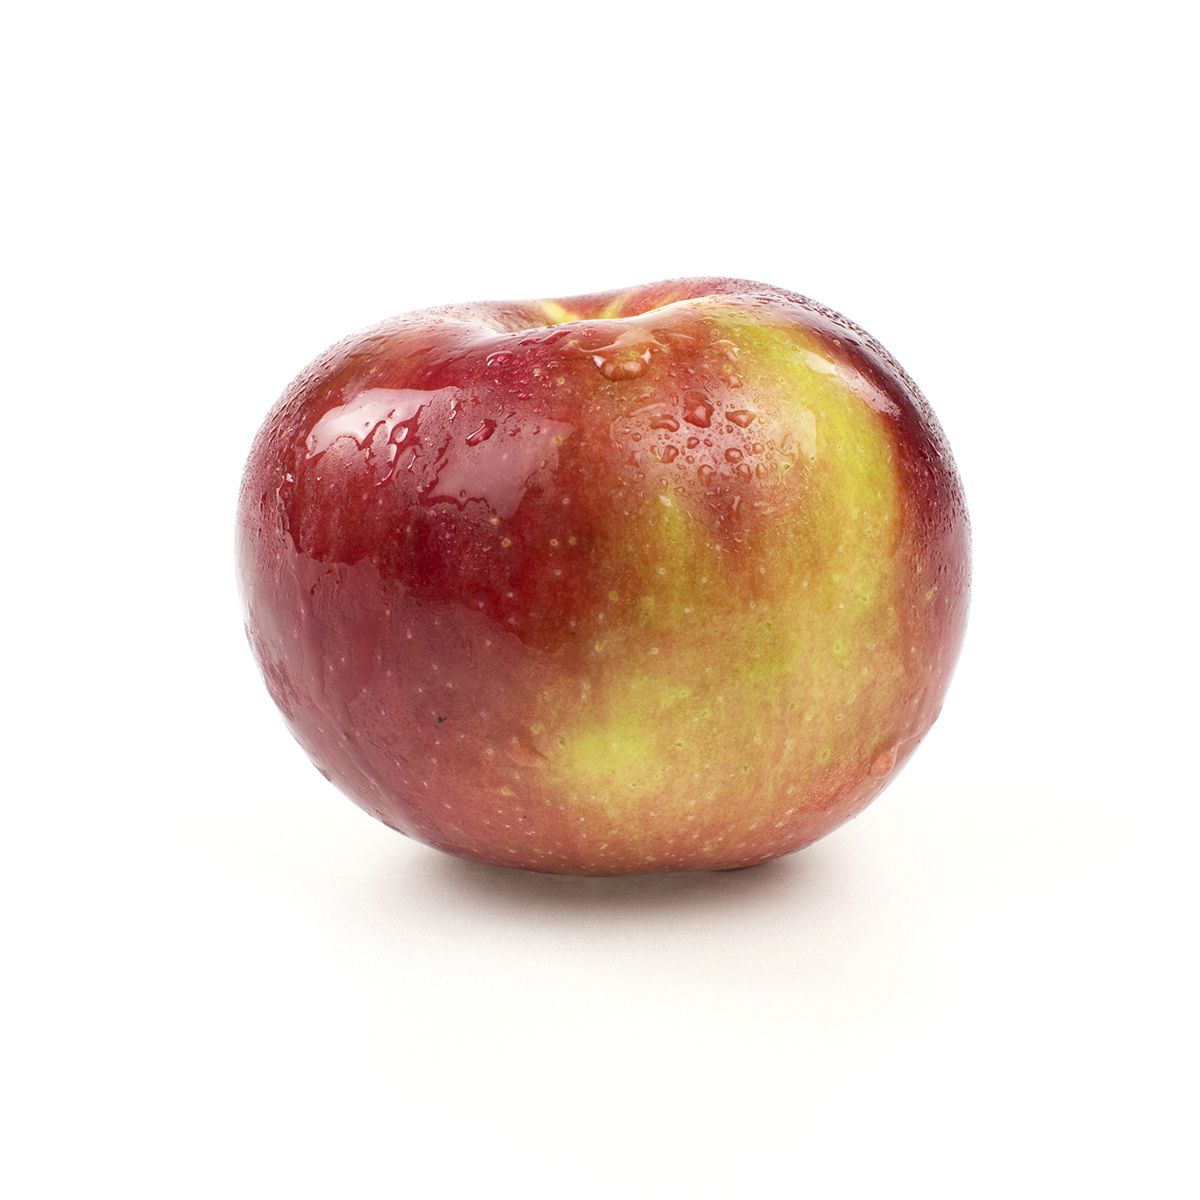 Hudson River Fruit McIntosh Apples